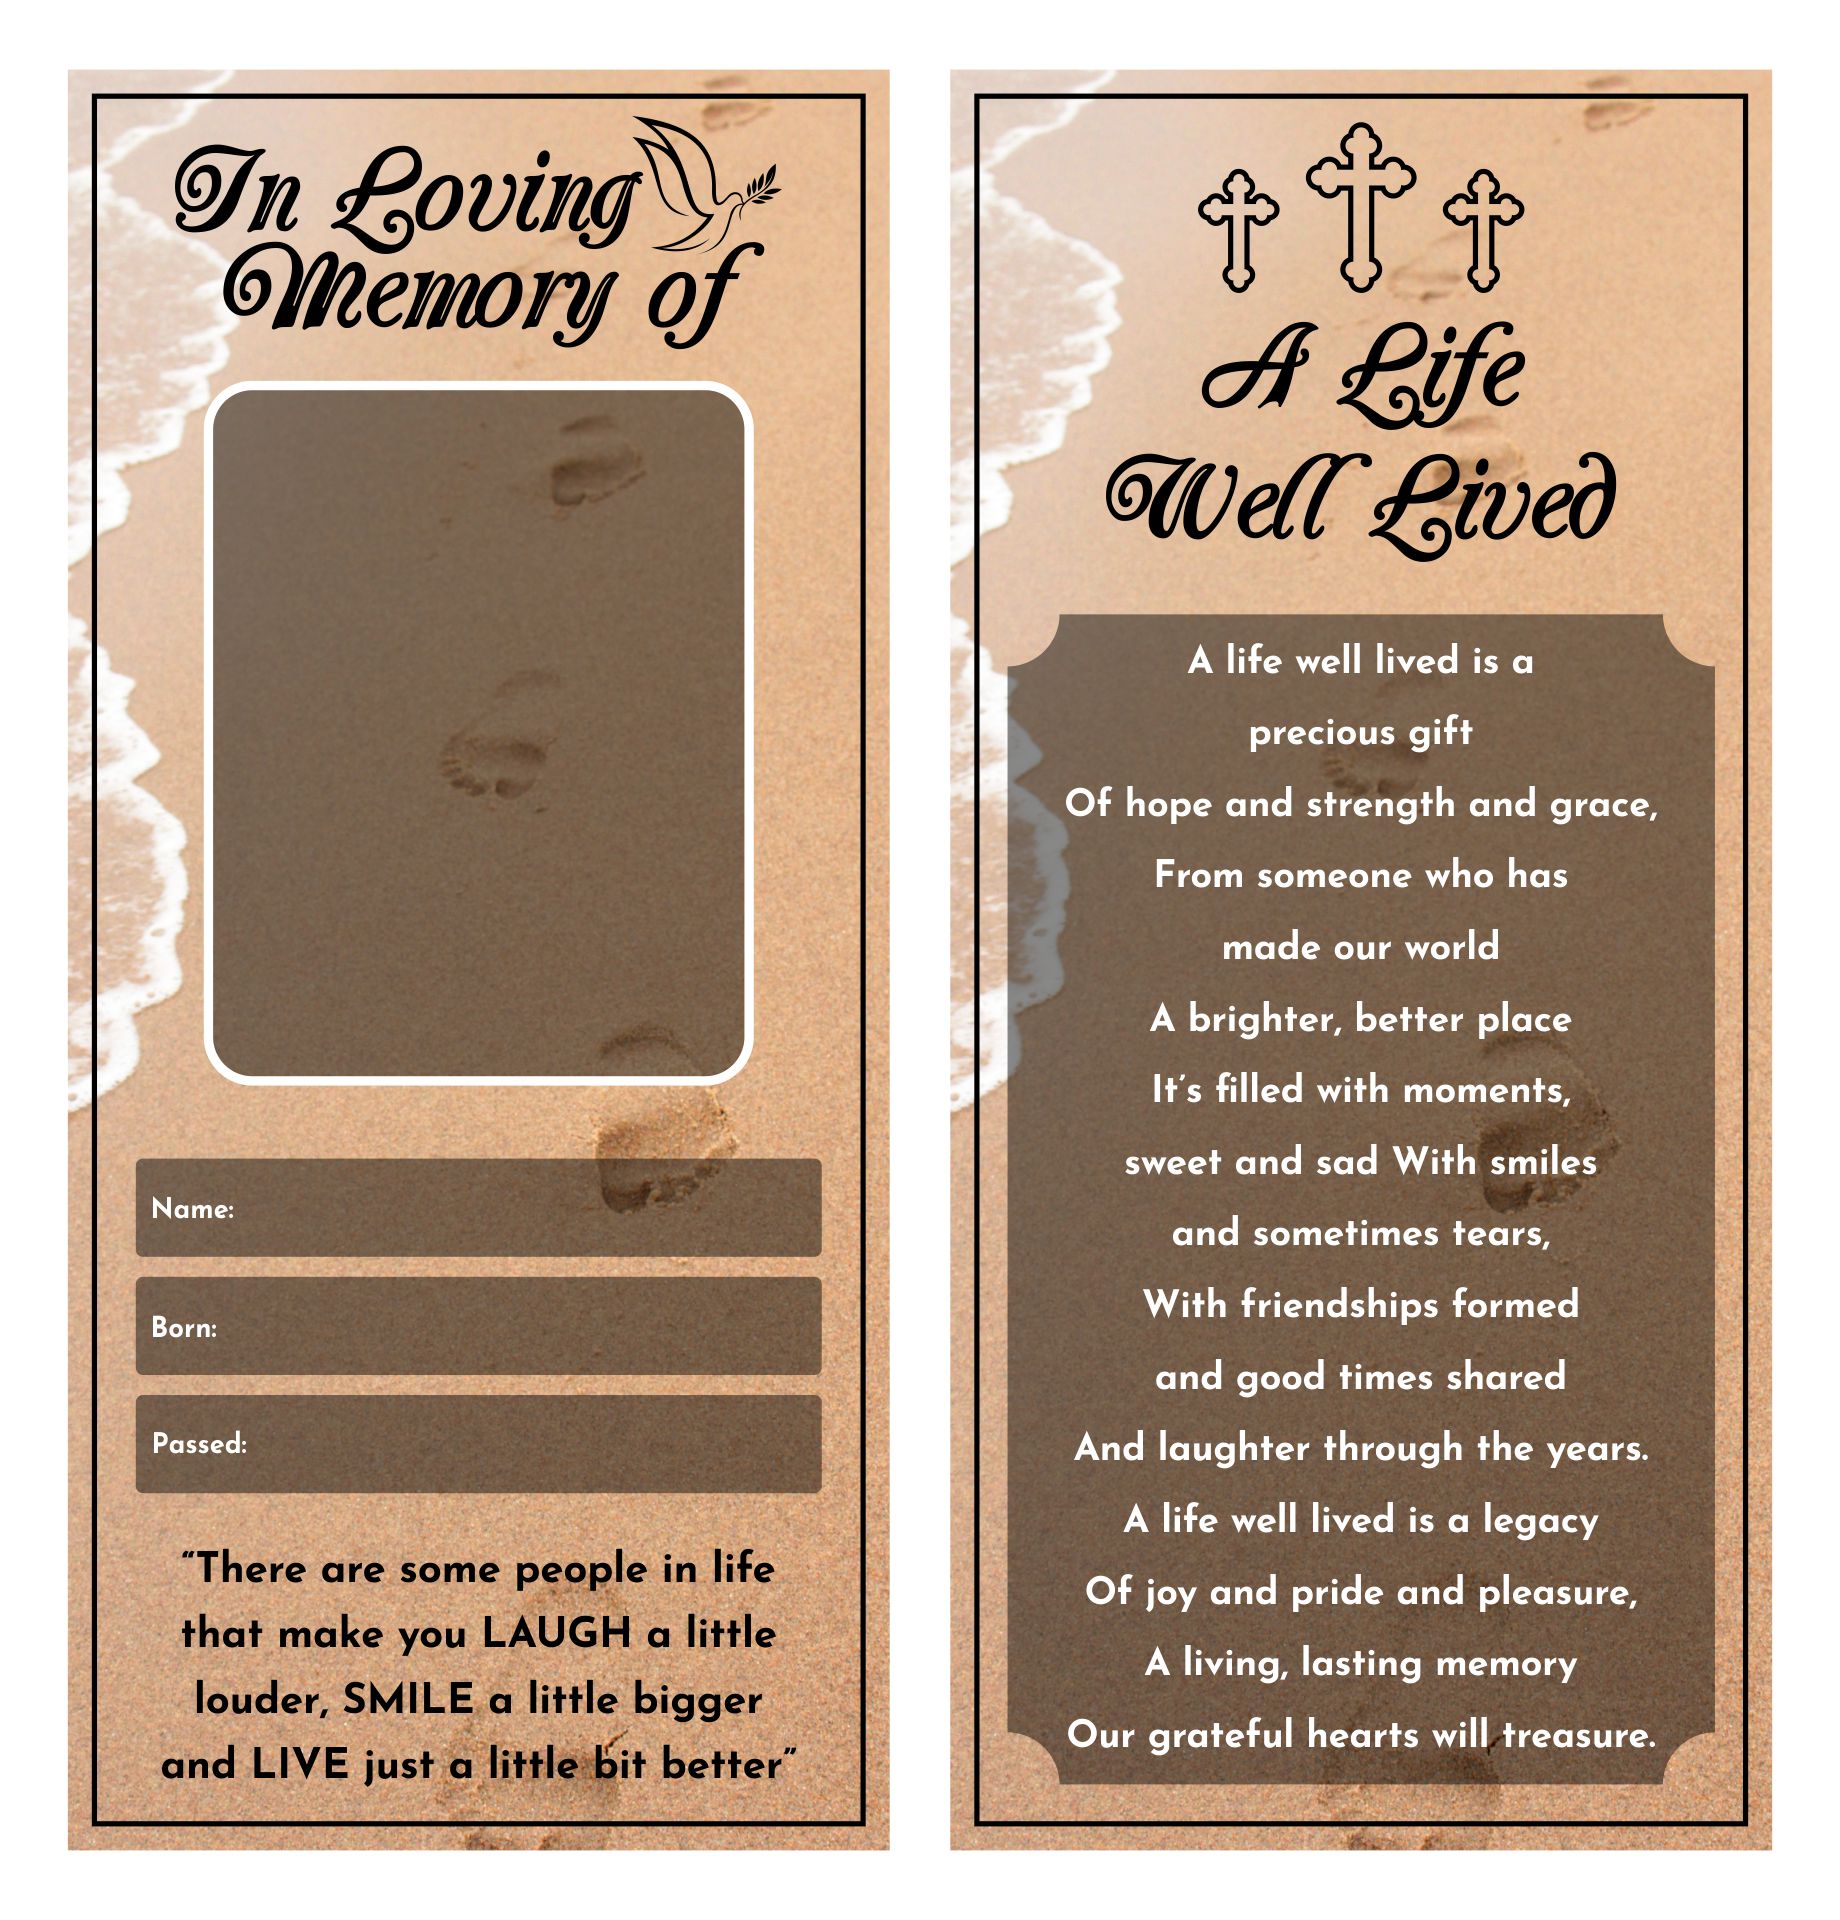 Memorial Prayer Cards